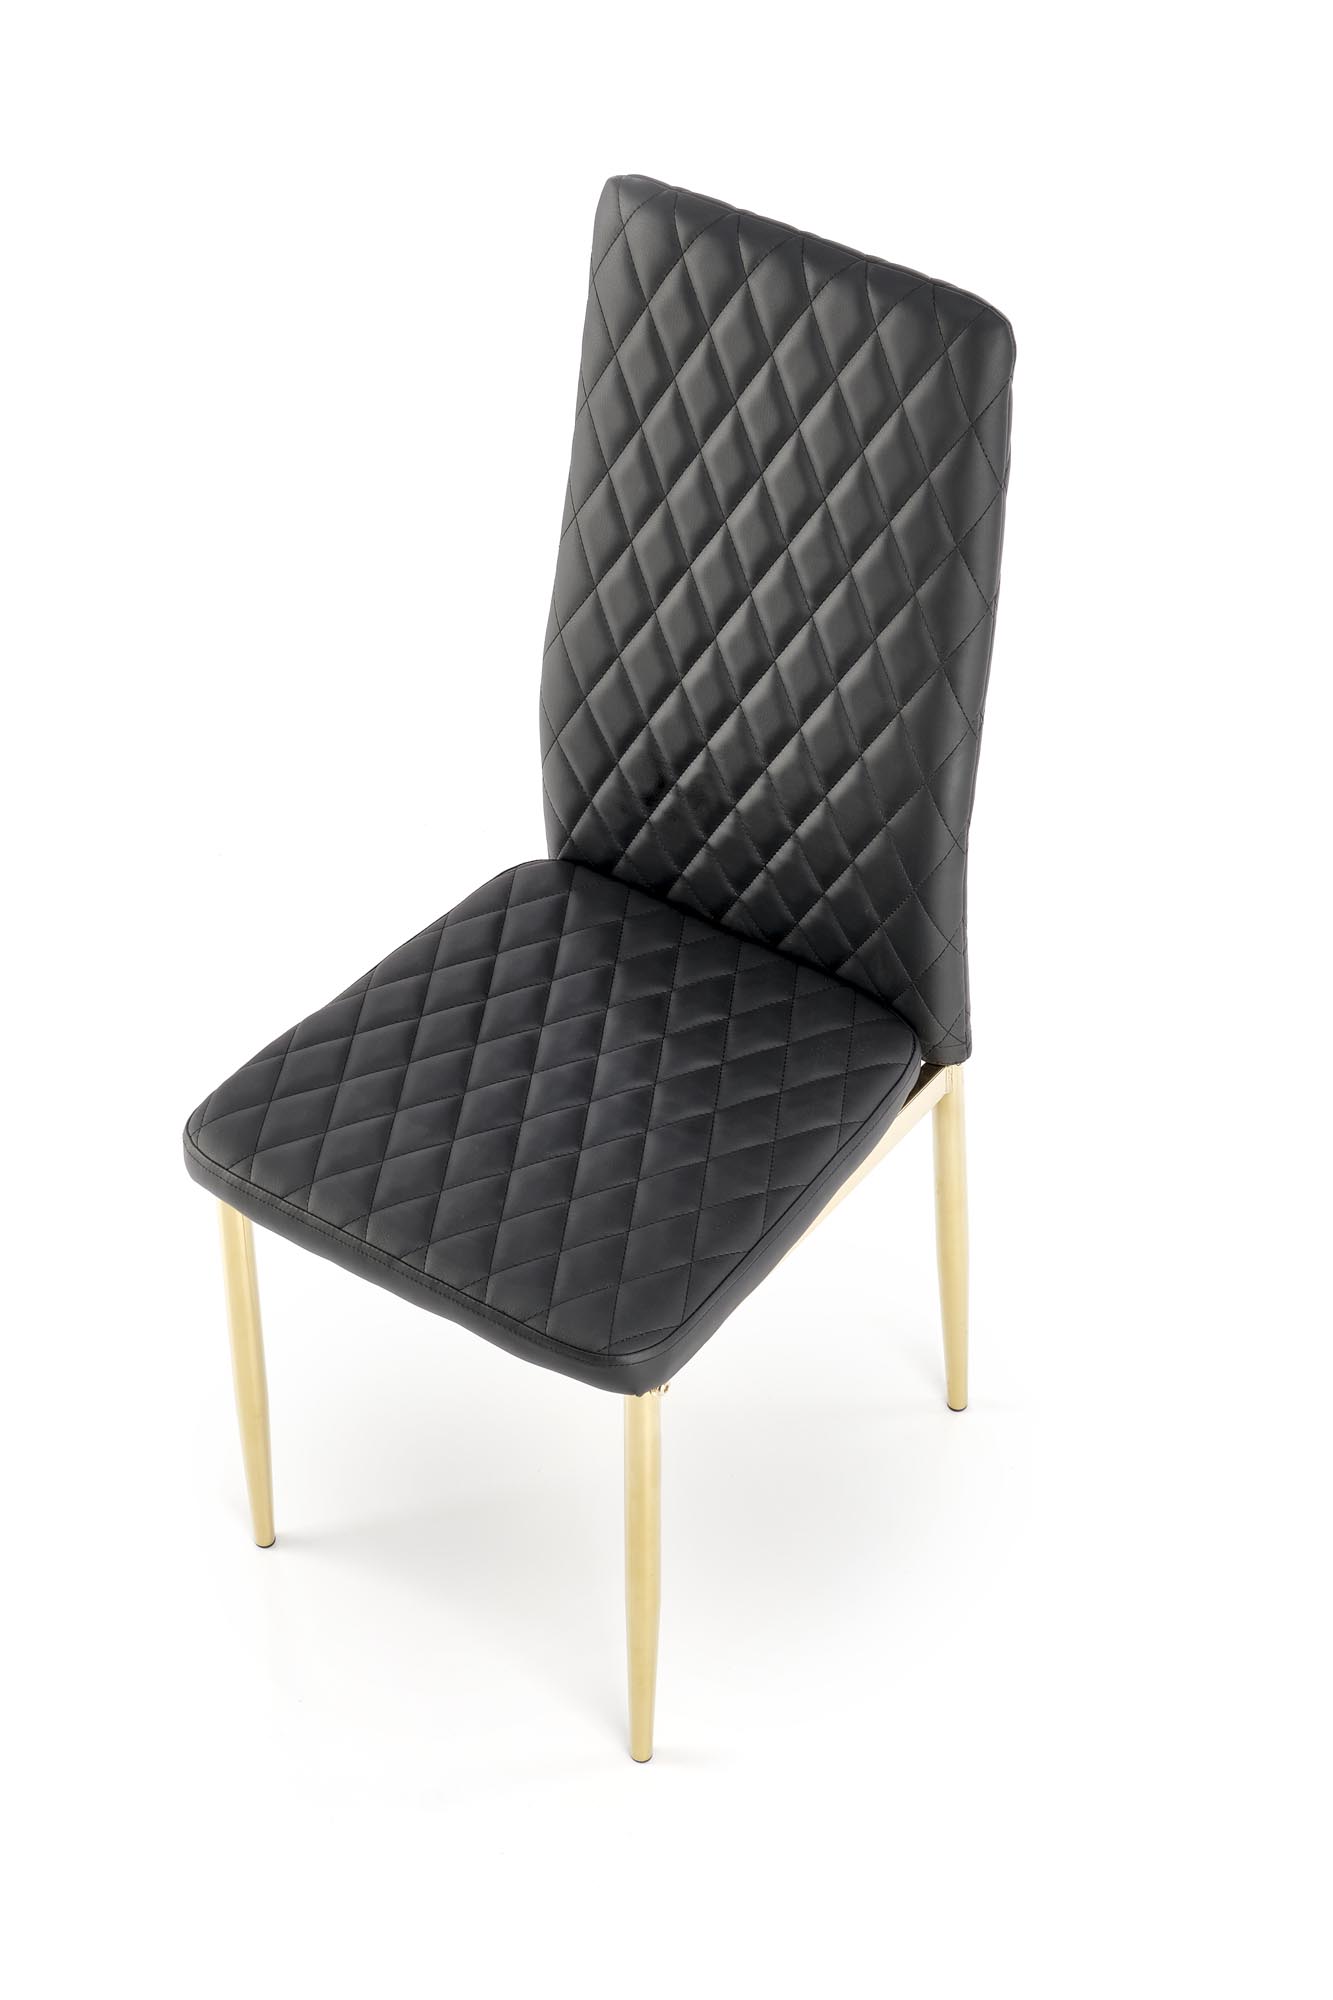 Scaun tapițat K501 - negru Židle čalouněné k501 - Černý / Žlutý